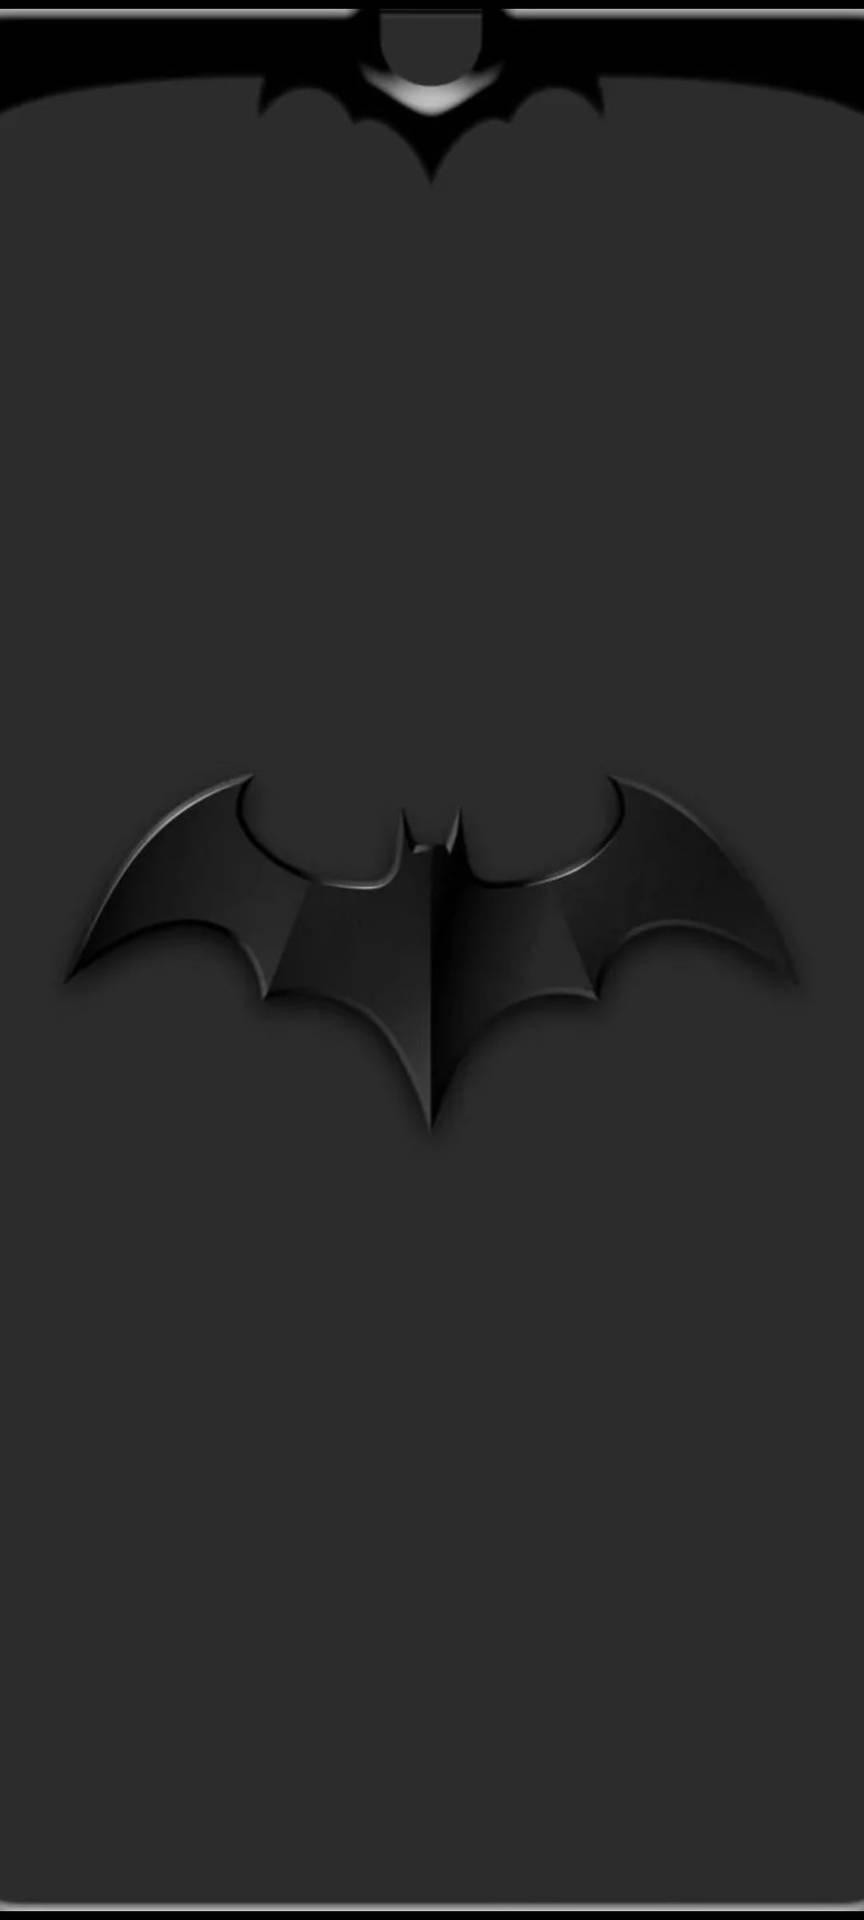 Erhabenesiphone-hintergrundbild Mit Schwarzem Batman-logo. Wallpaper